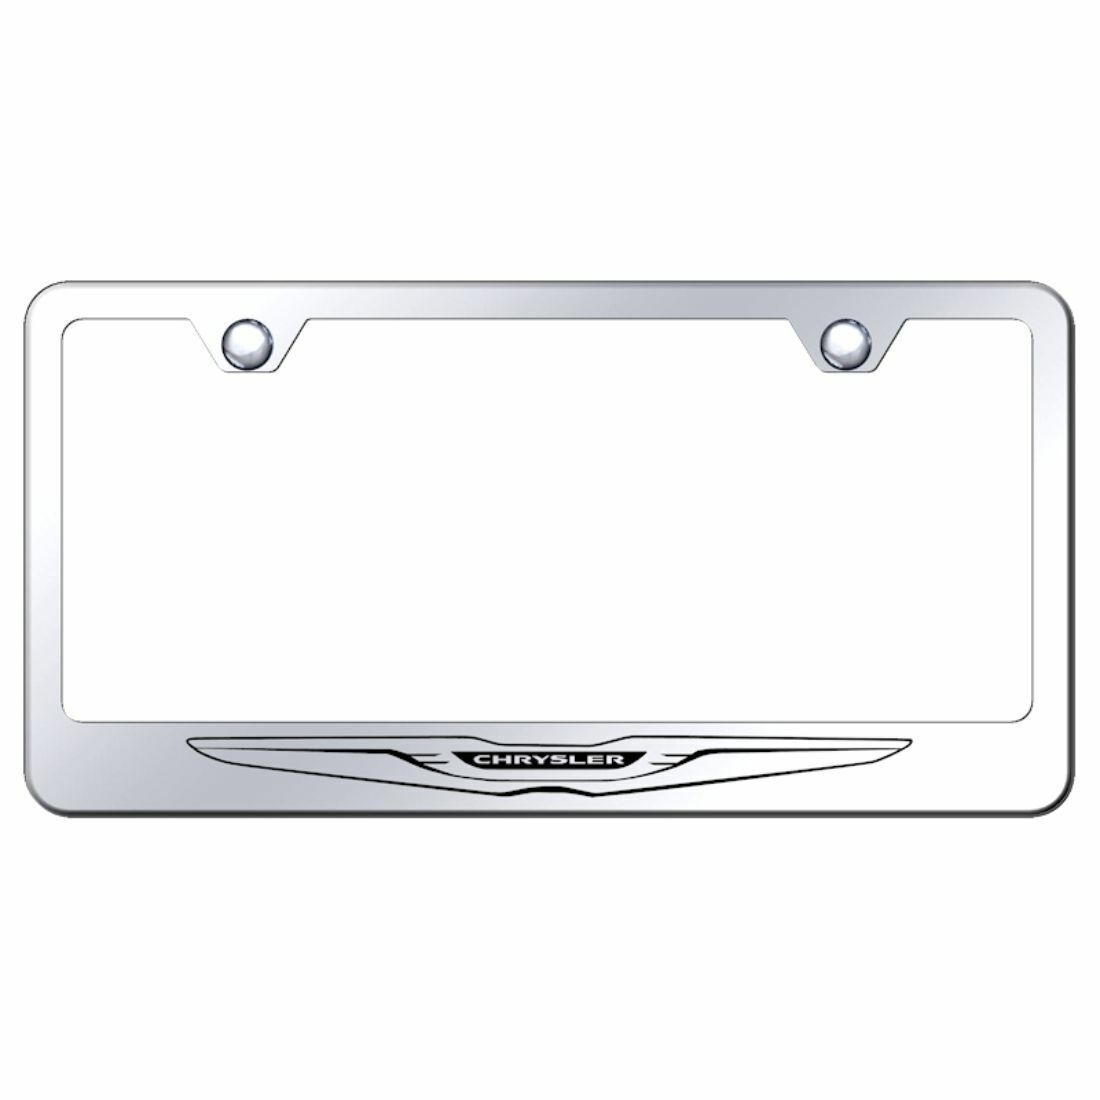 Chrysler Mirrored Chrome Stainless Steel License Plate Frame - LF.CHRL.EC